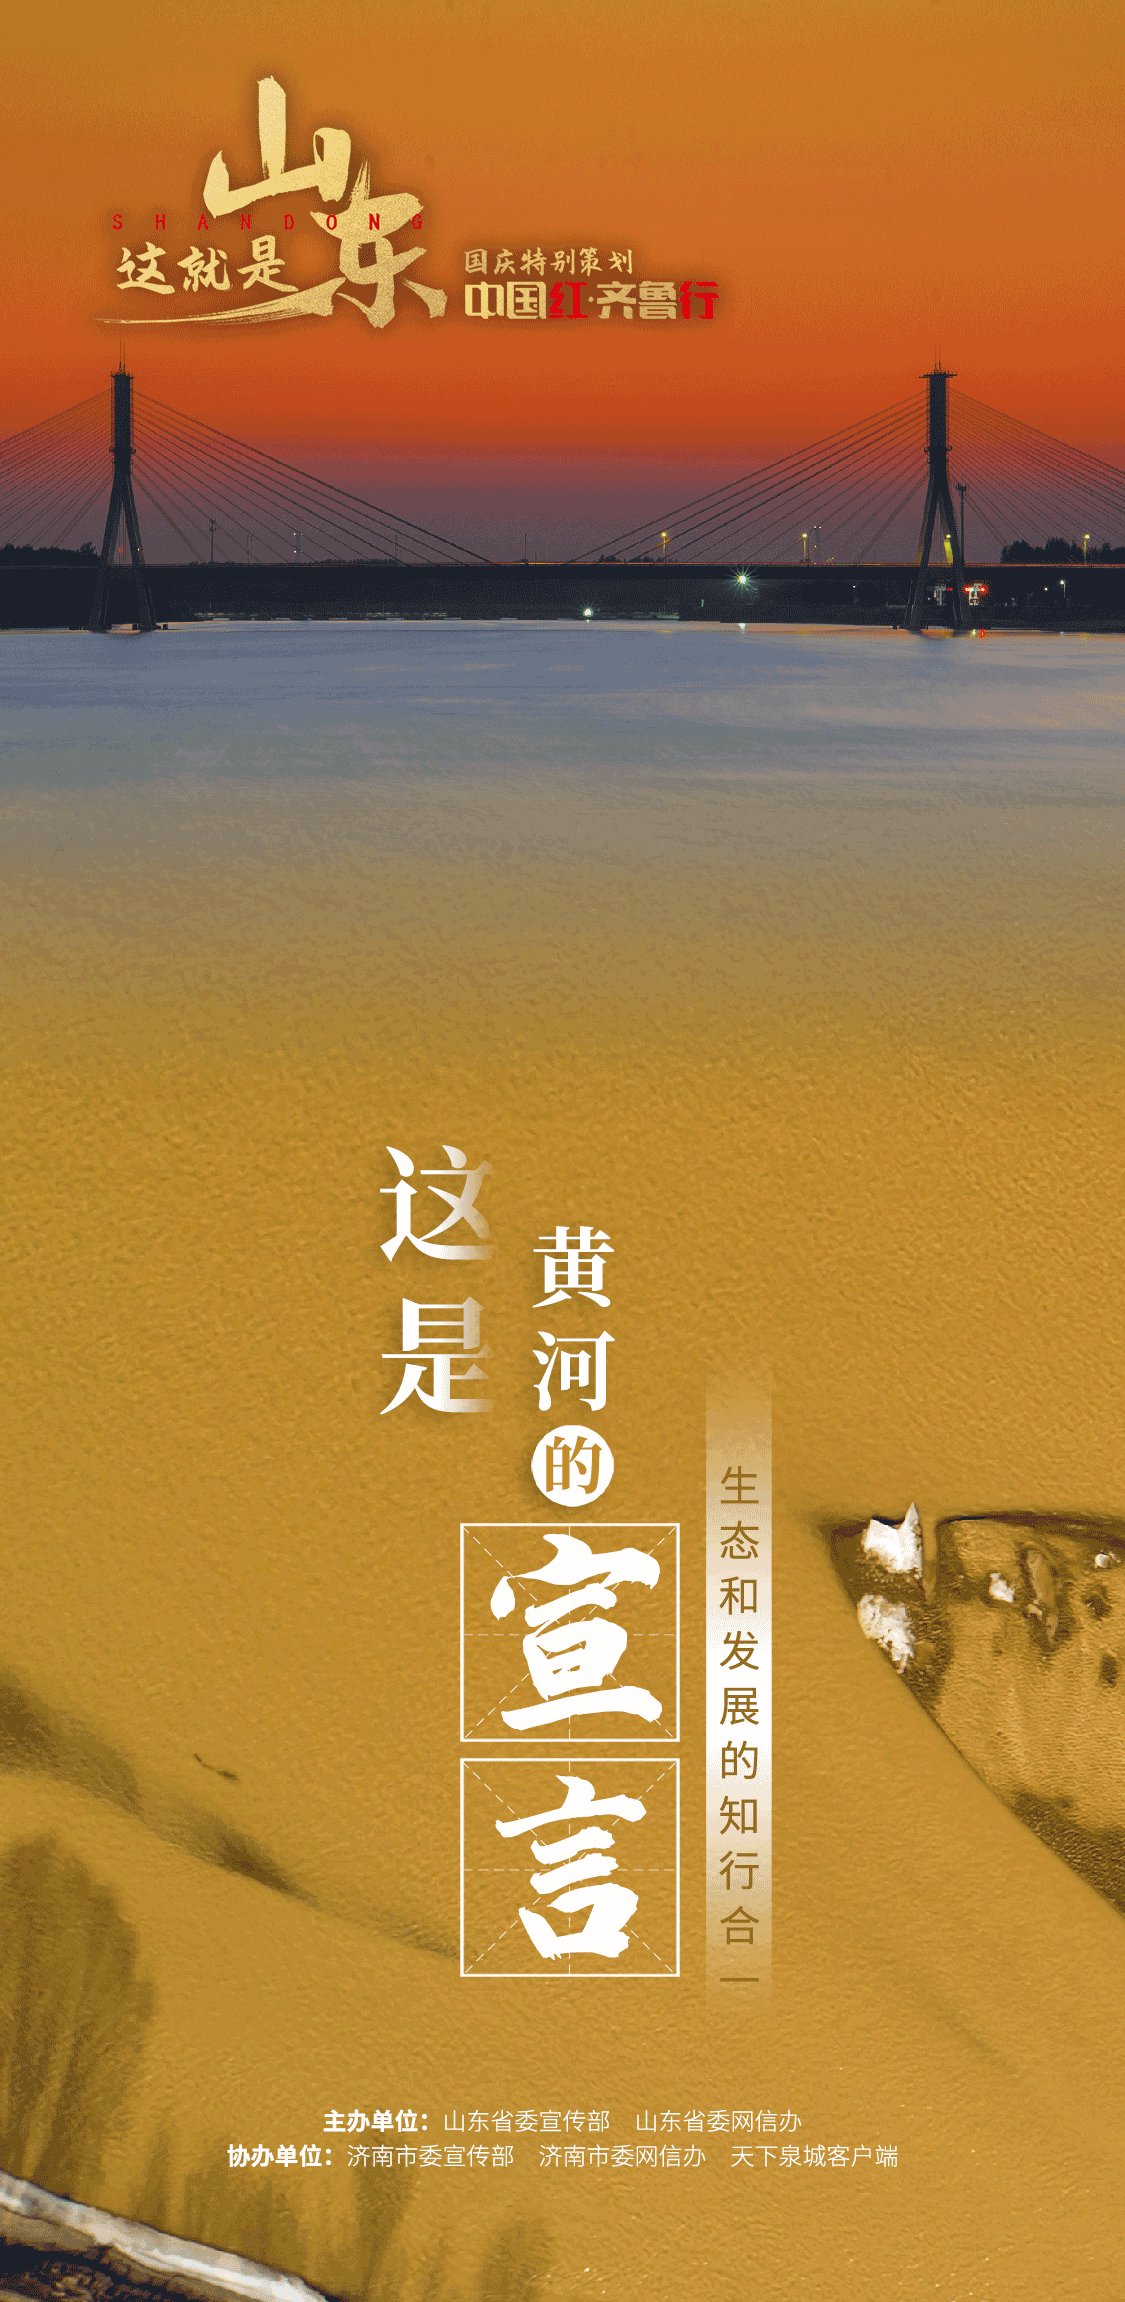 9张海报诠释“这就是山东”|中国红·齐鲁行 | 齐鲁行